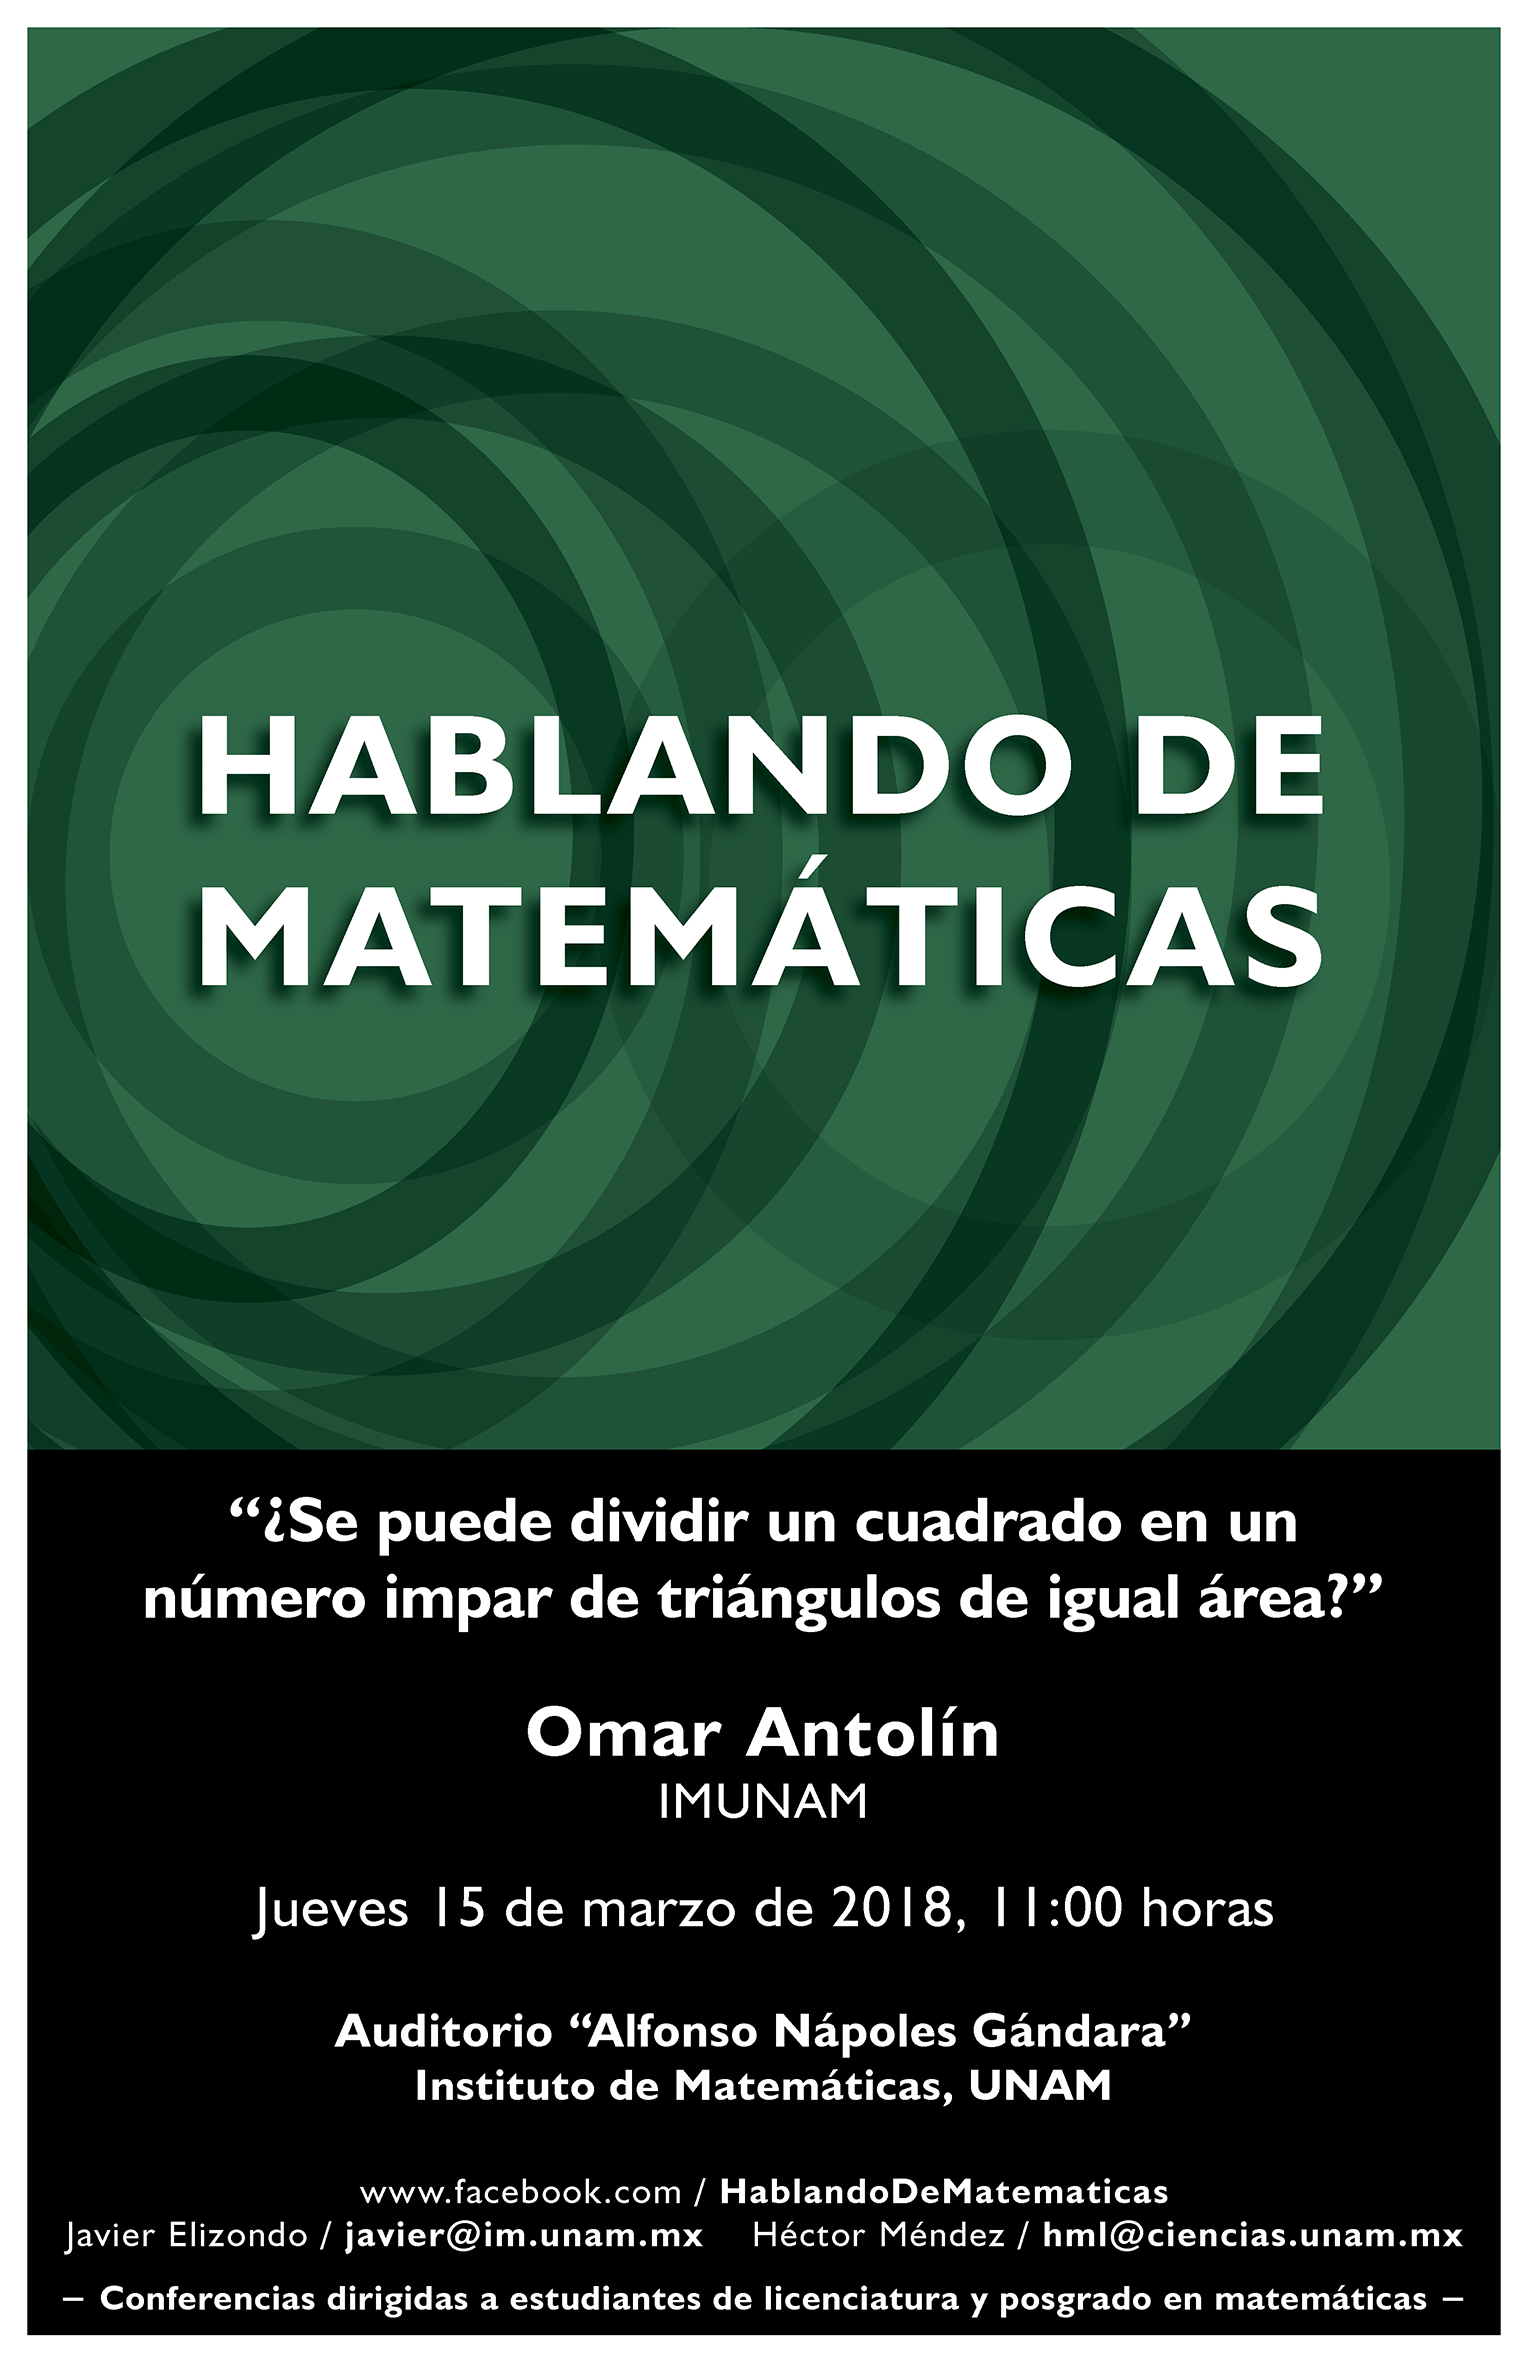 Hablando de Matemáticas: Omar Antolín, IMUNAM 